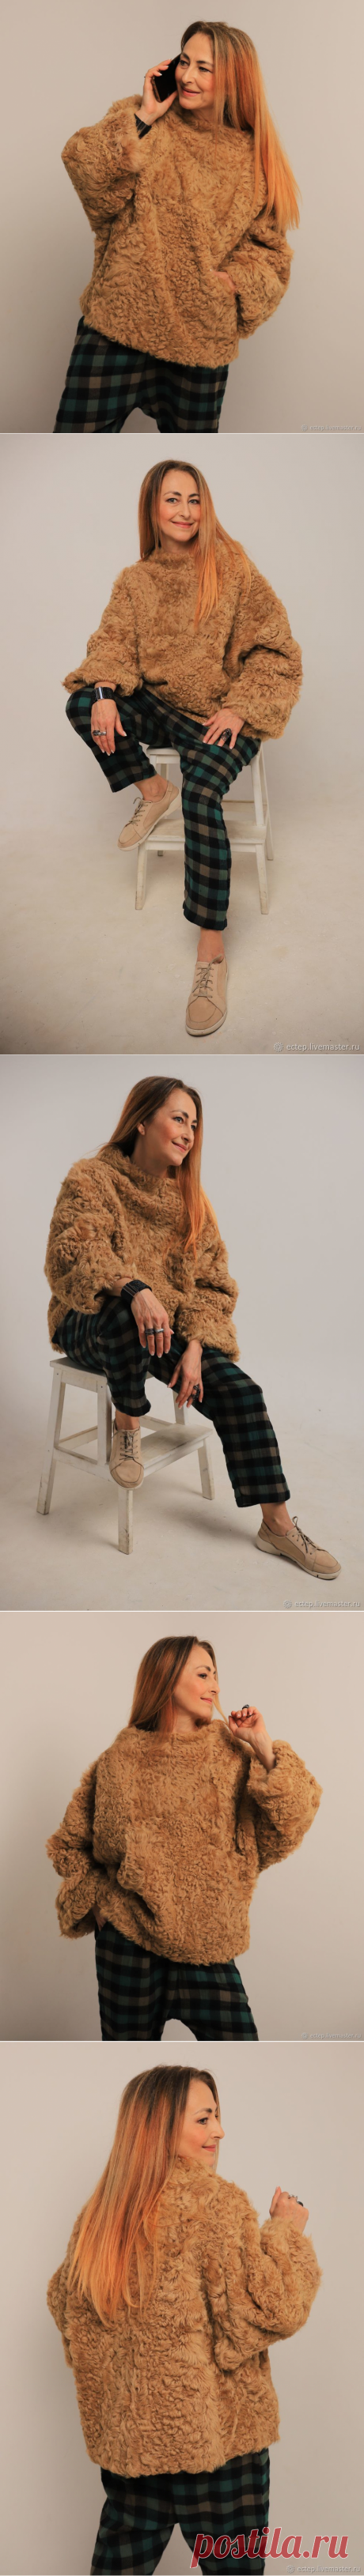 Меховой свитер "Золотисто-песочный" – купить в интернет-магазине на Ярмарке Мастеров с доставкой - GITW1RU | Таганрог